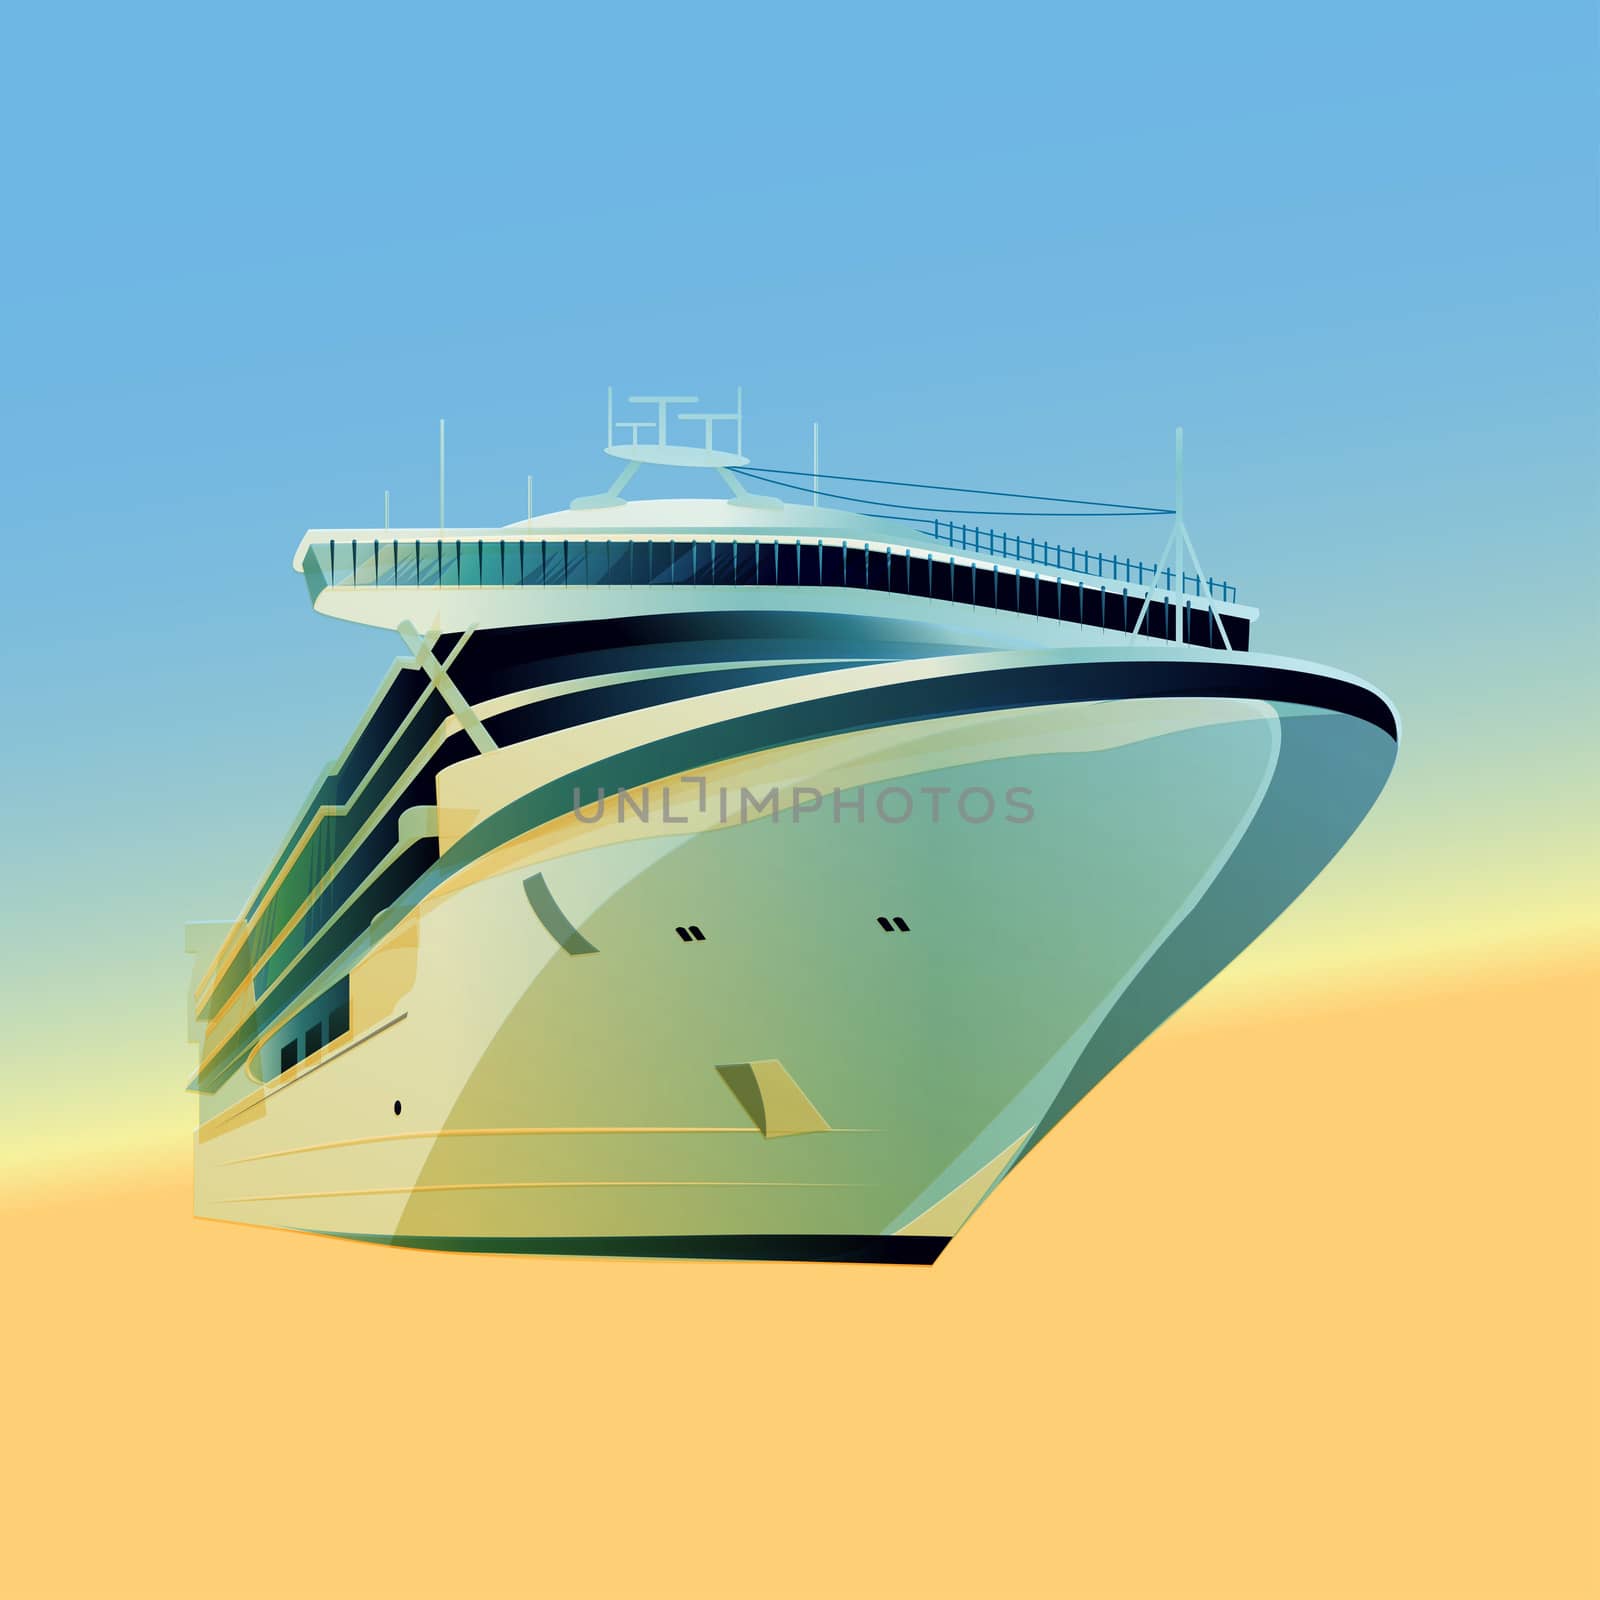 Ocean liner  illustration on a gradient background